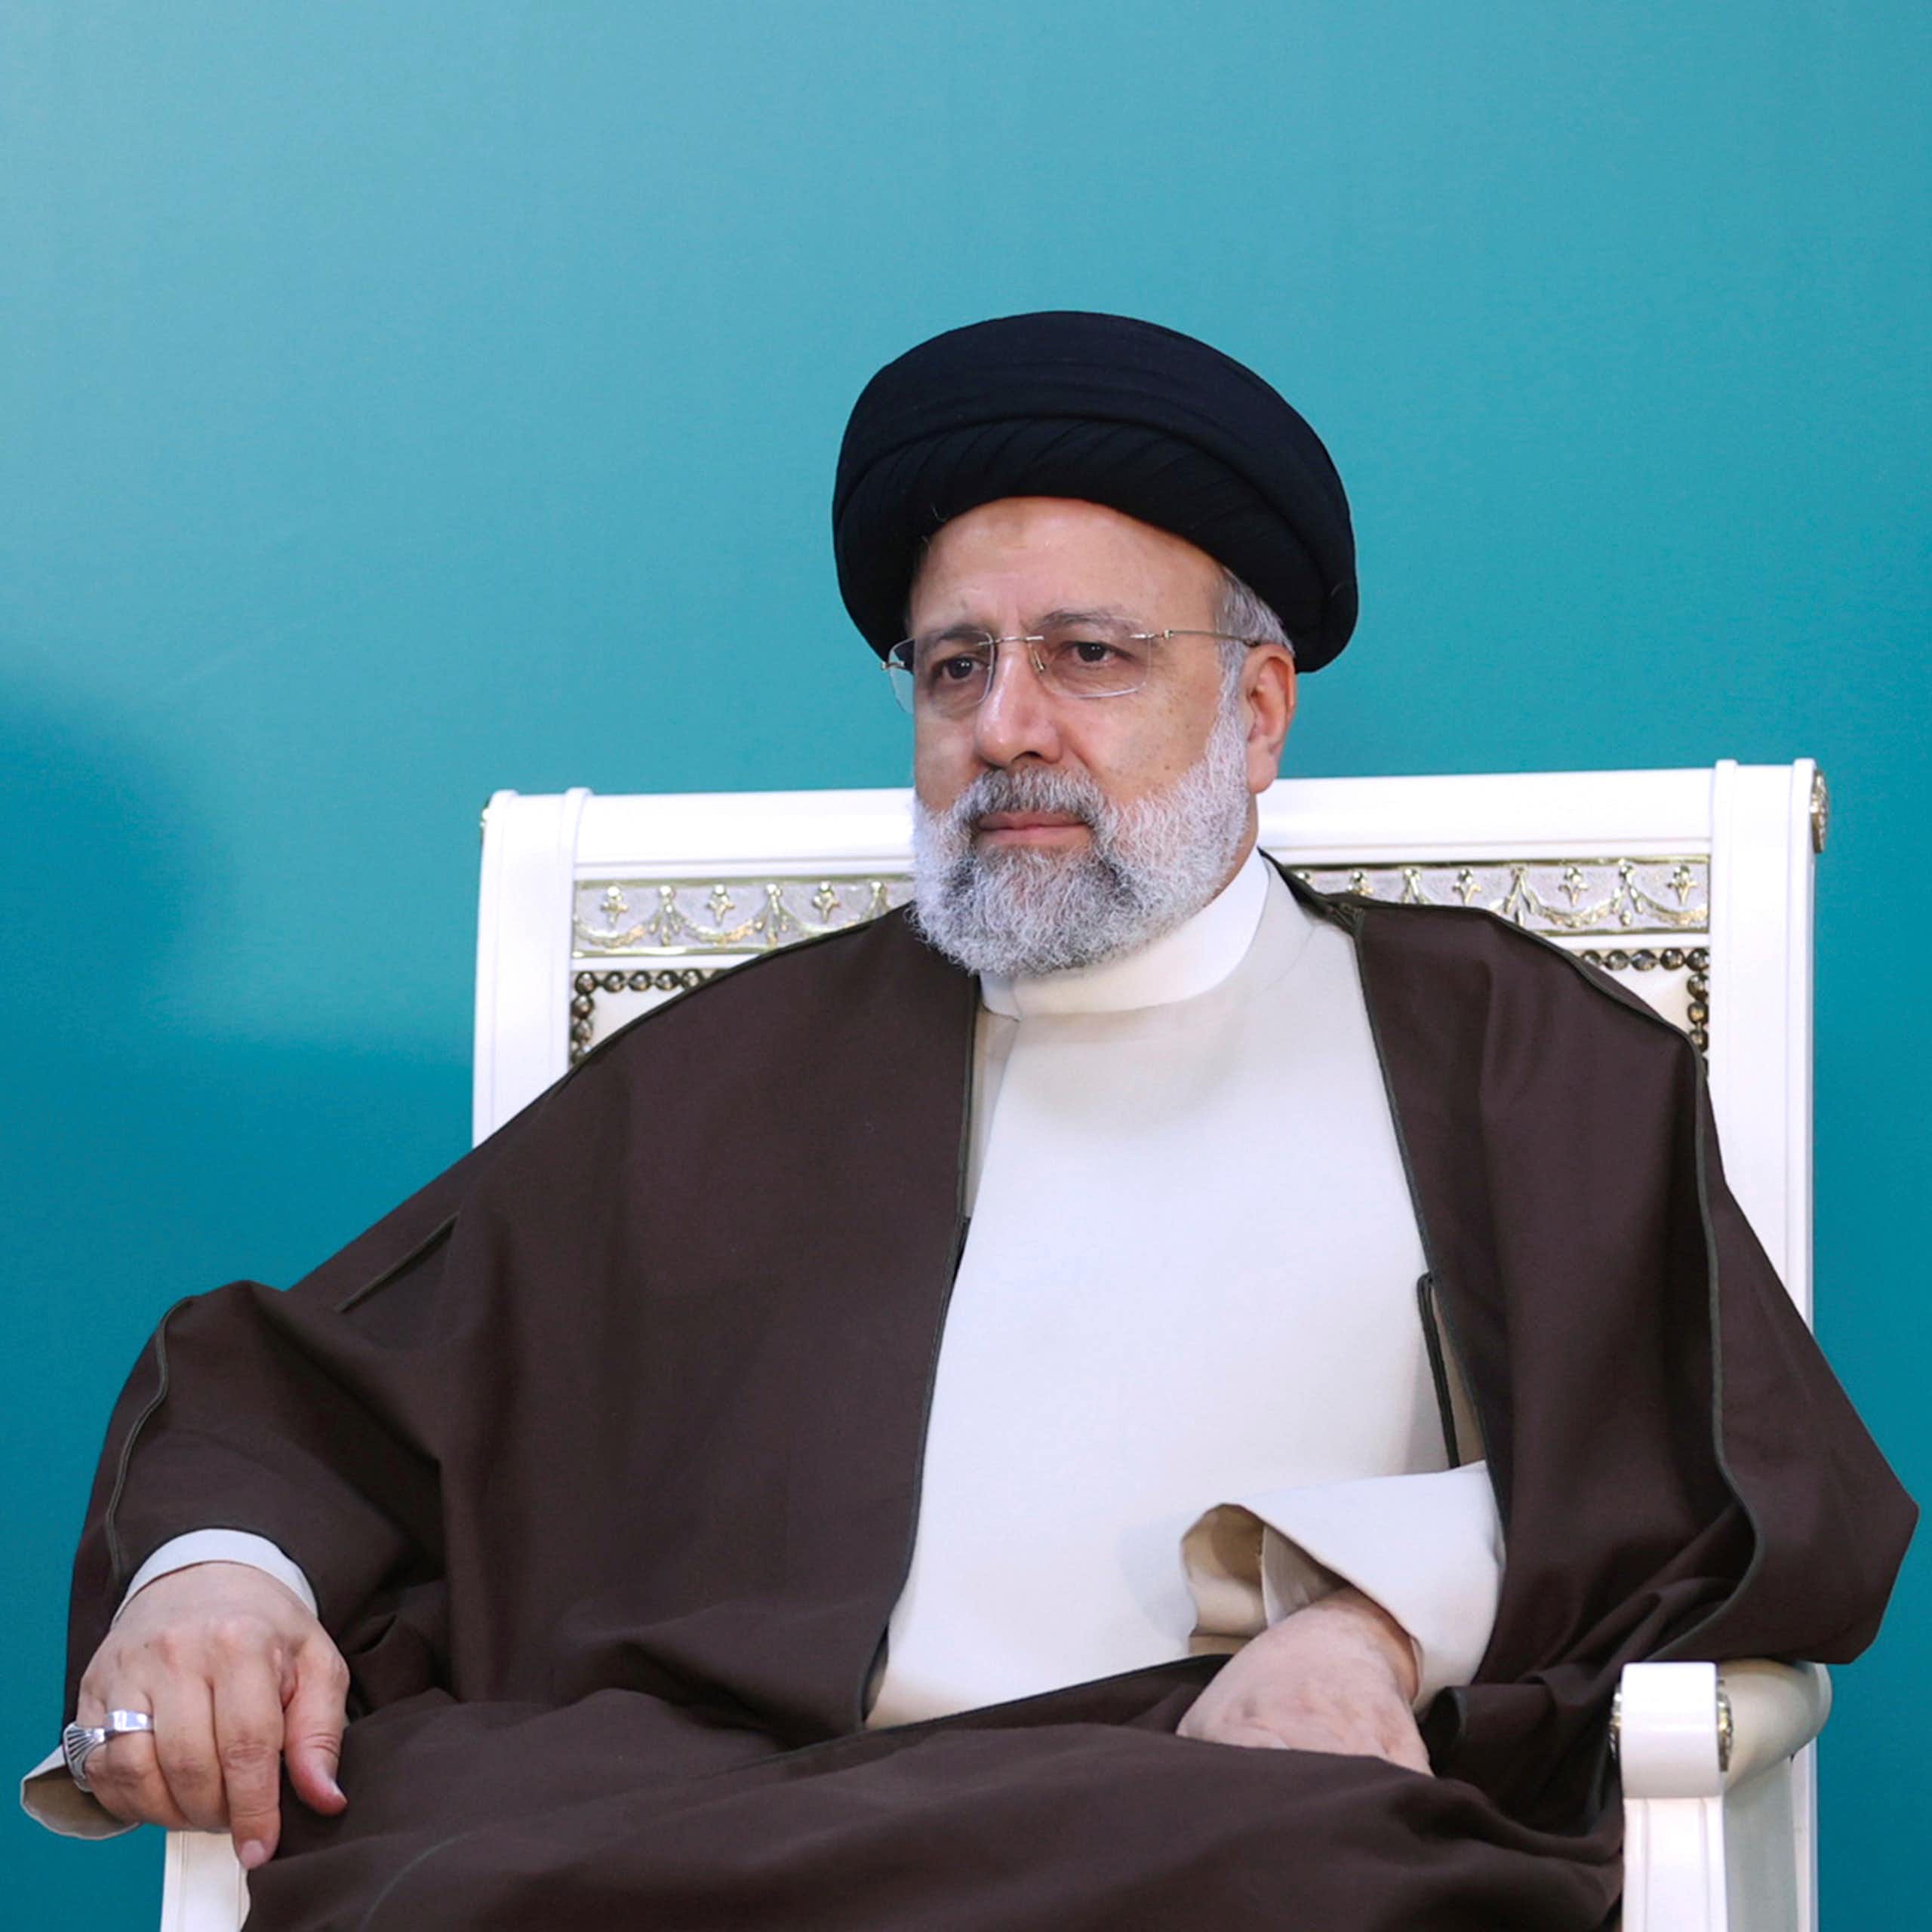 Un hombre vestido con el traje tradicional iraní sentado en una silla.